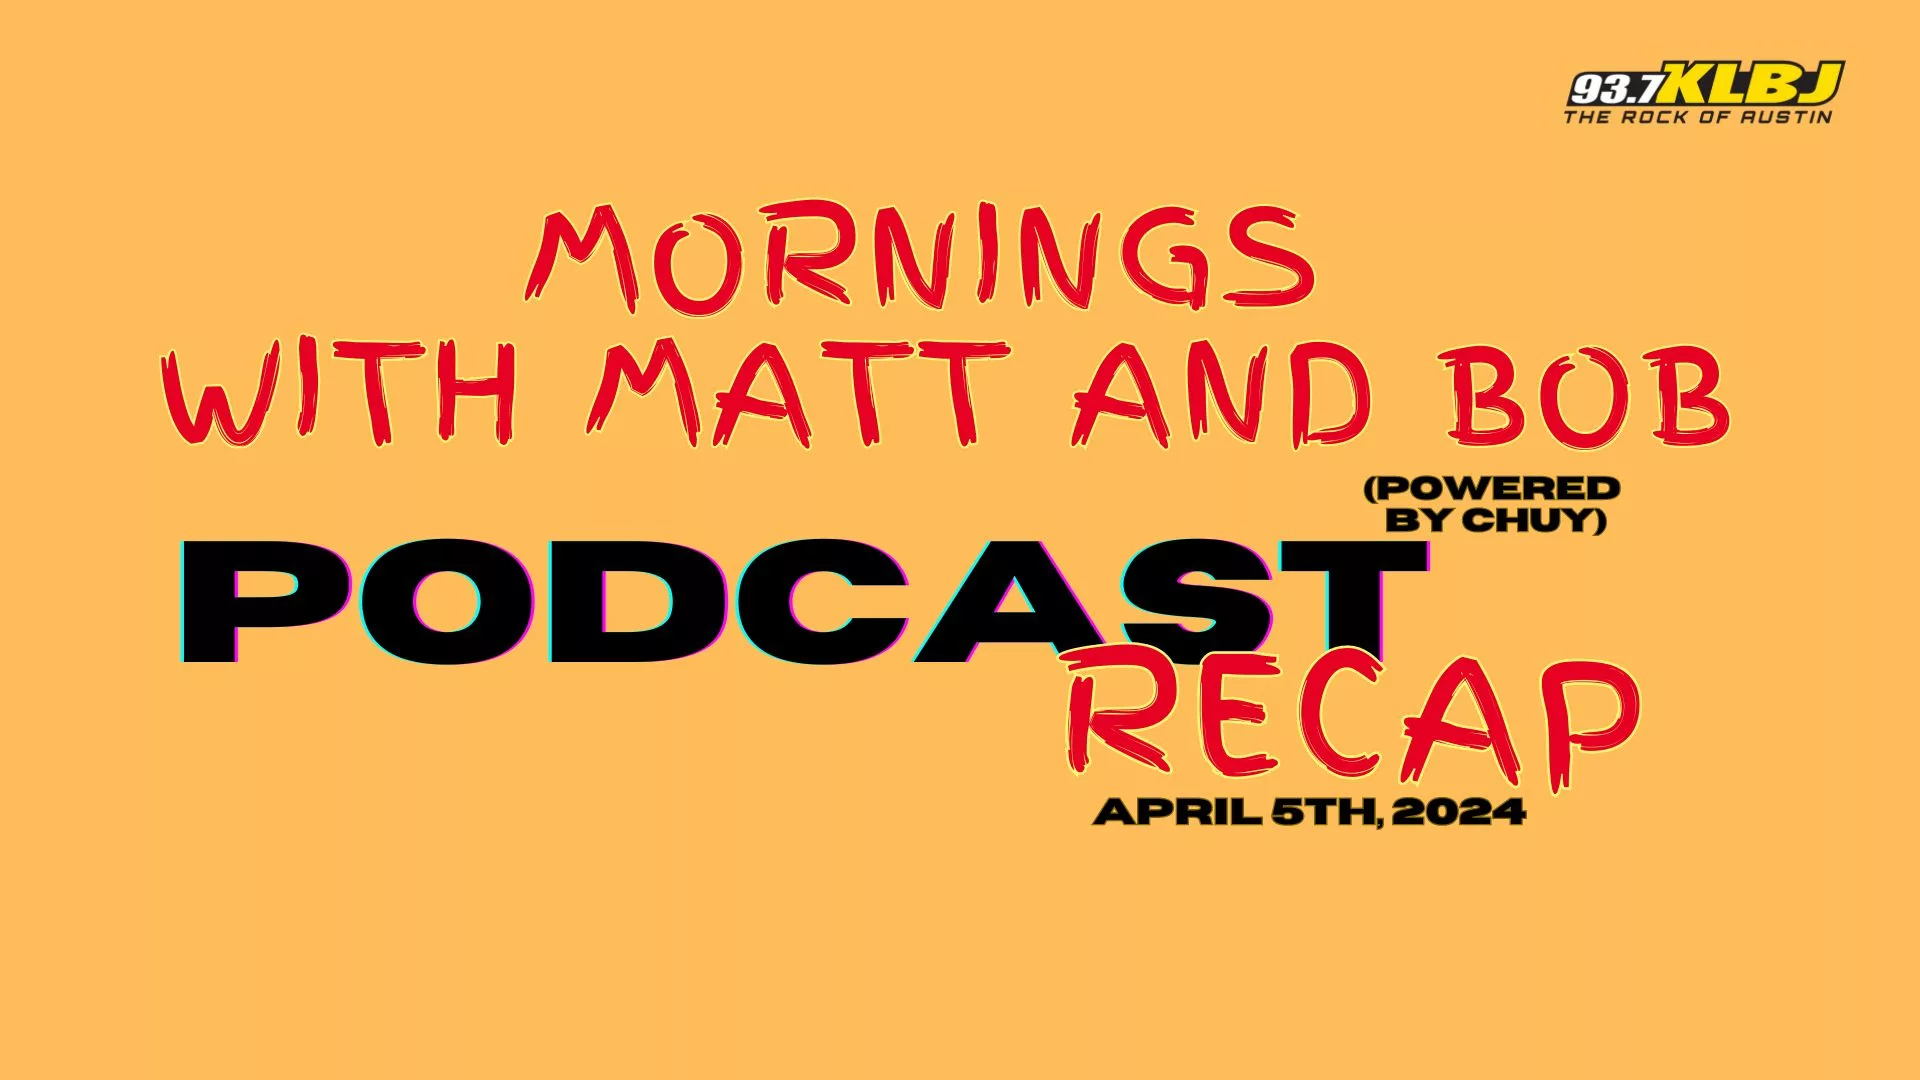 Matt and Bob Podcast Recap Header image 4-4-24